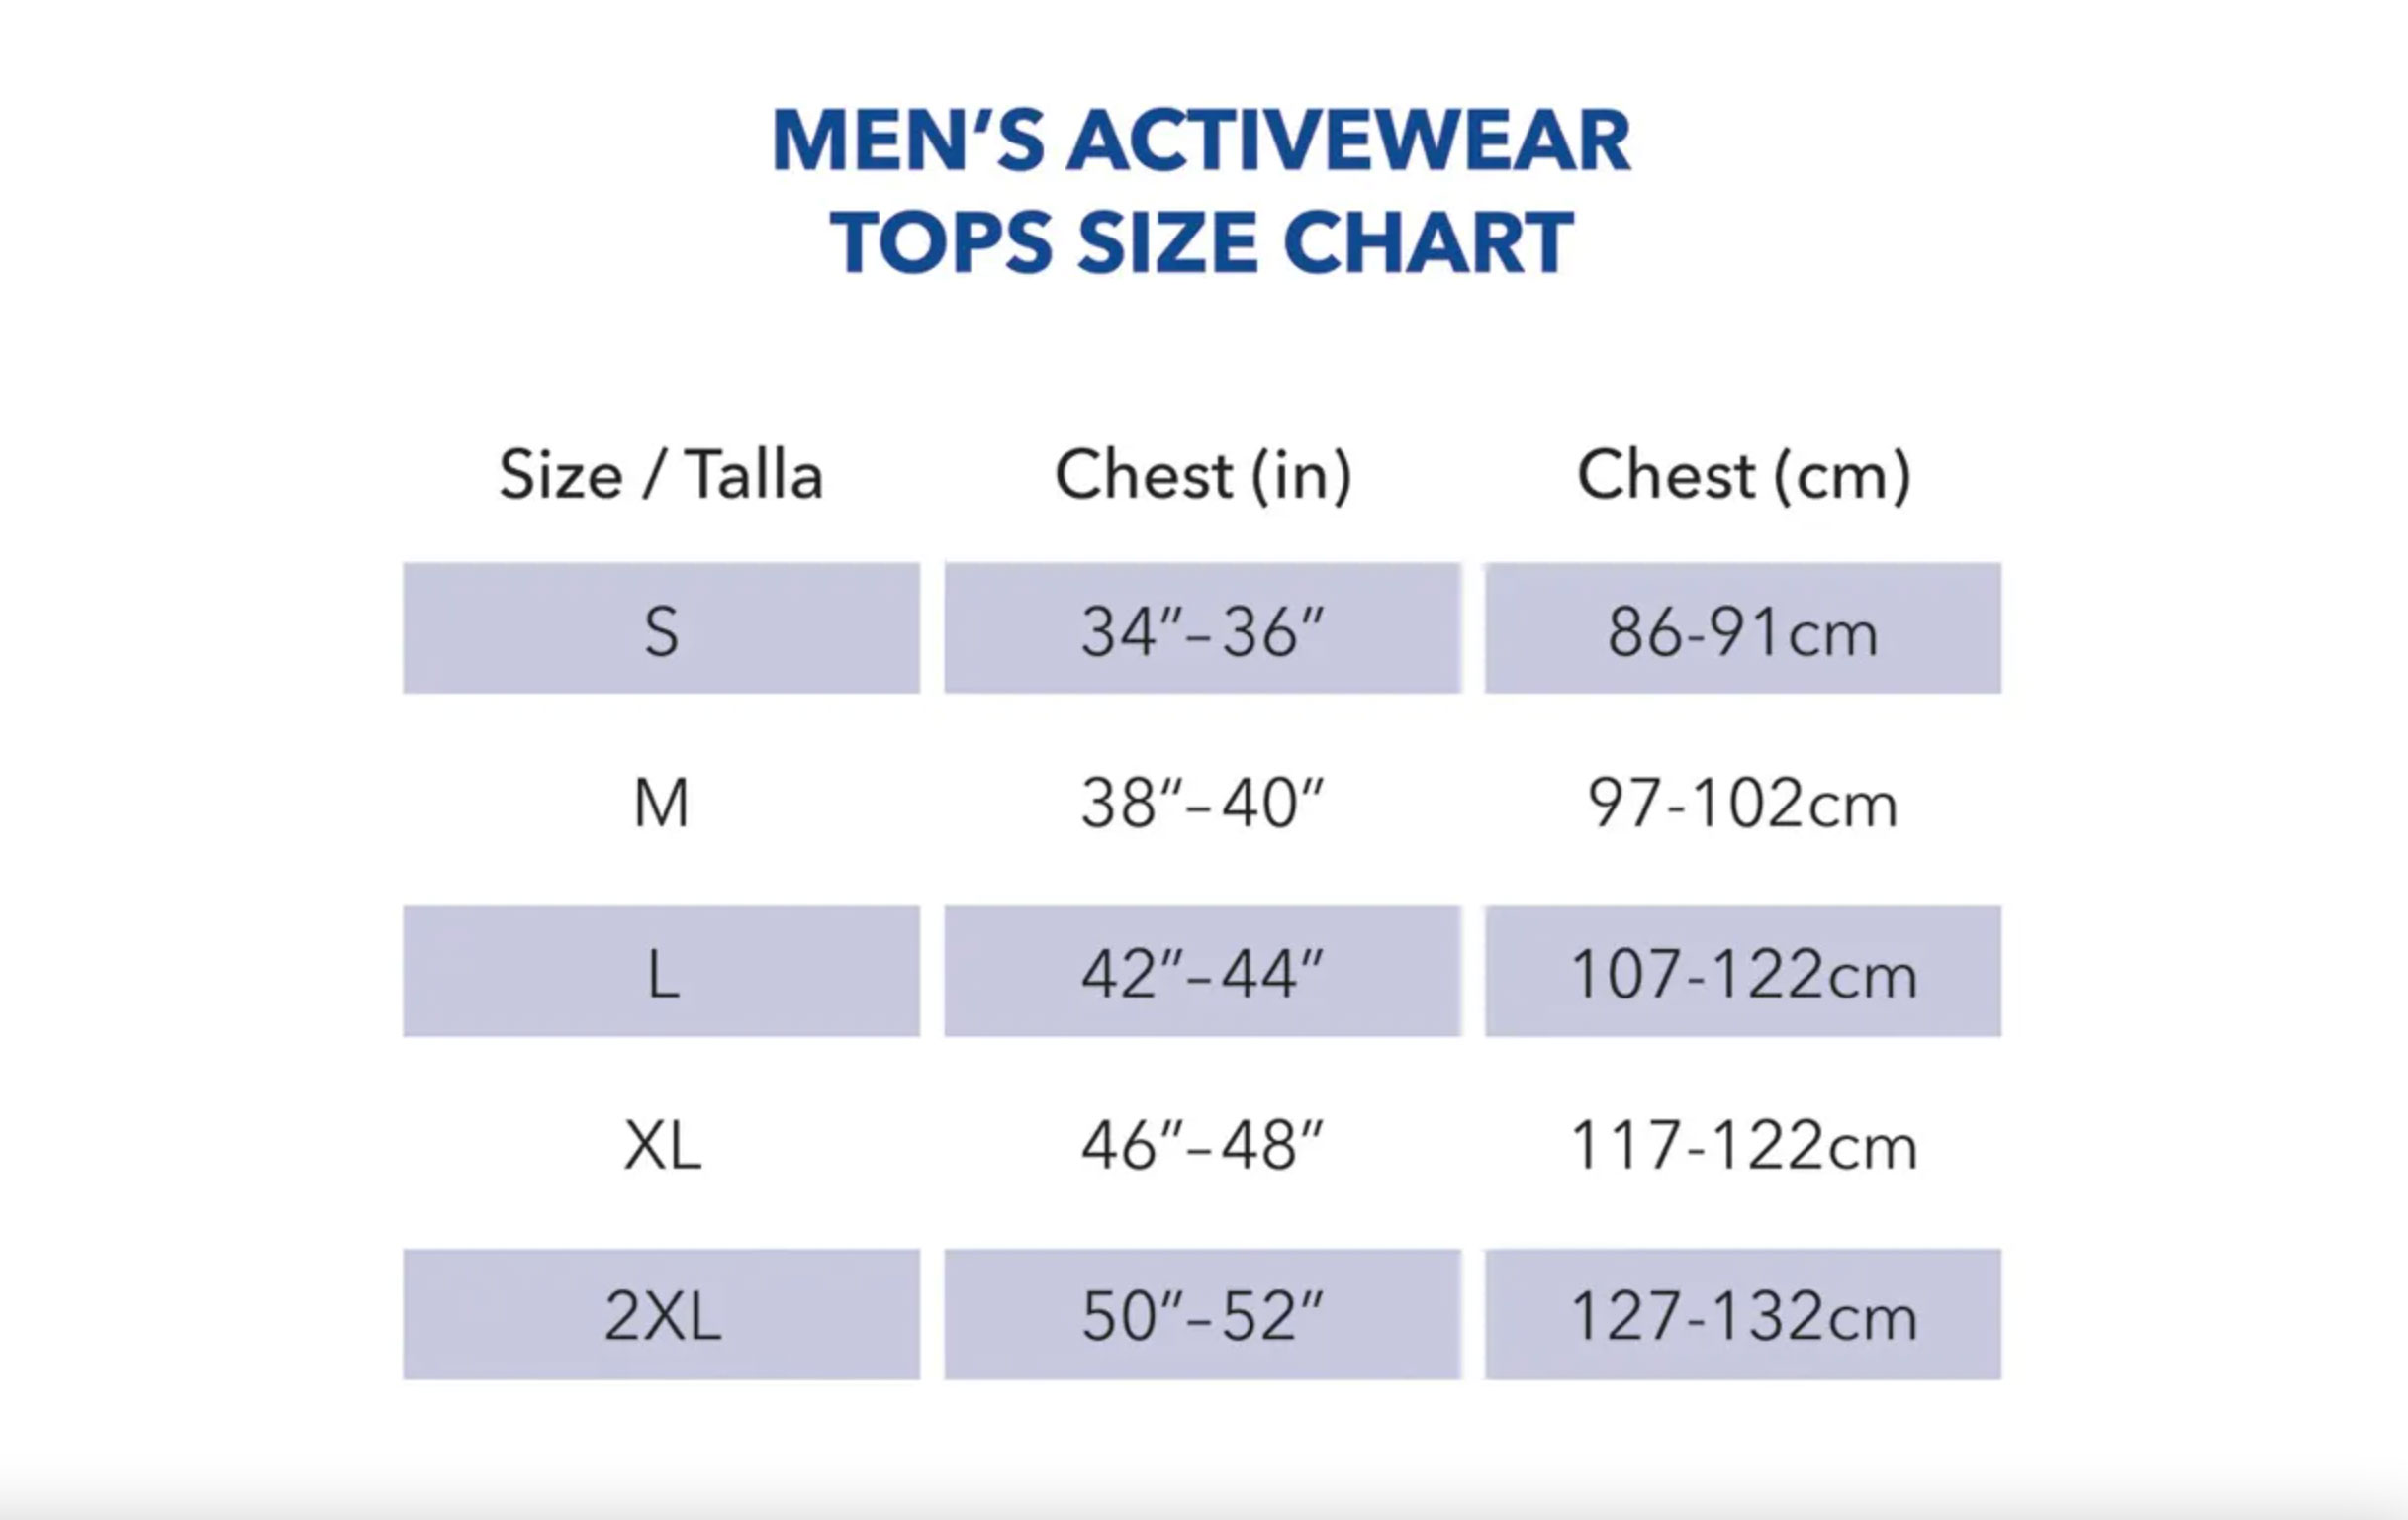 Gildan men's activewear top size chart. 